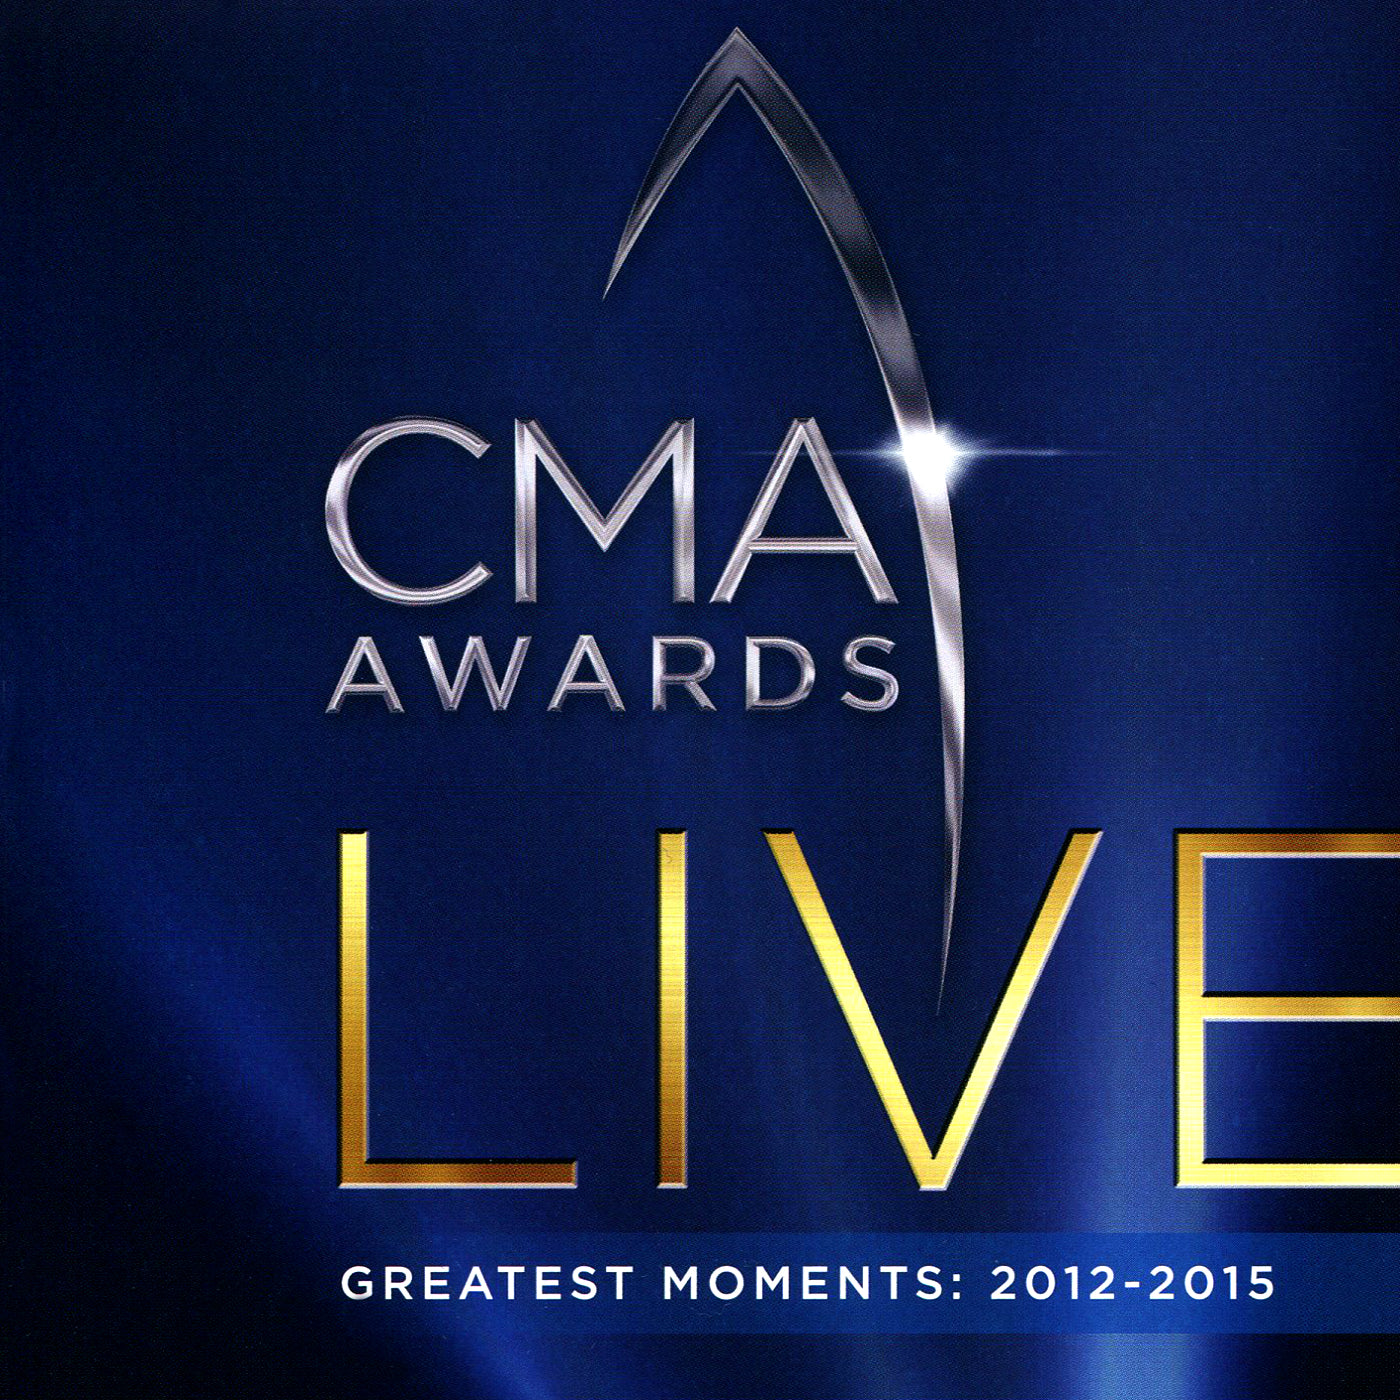 Cma Awards Live Retail [DVD] cover art